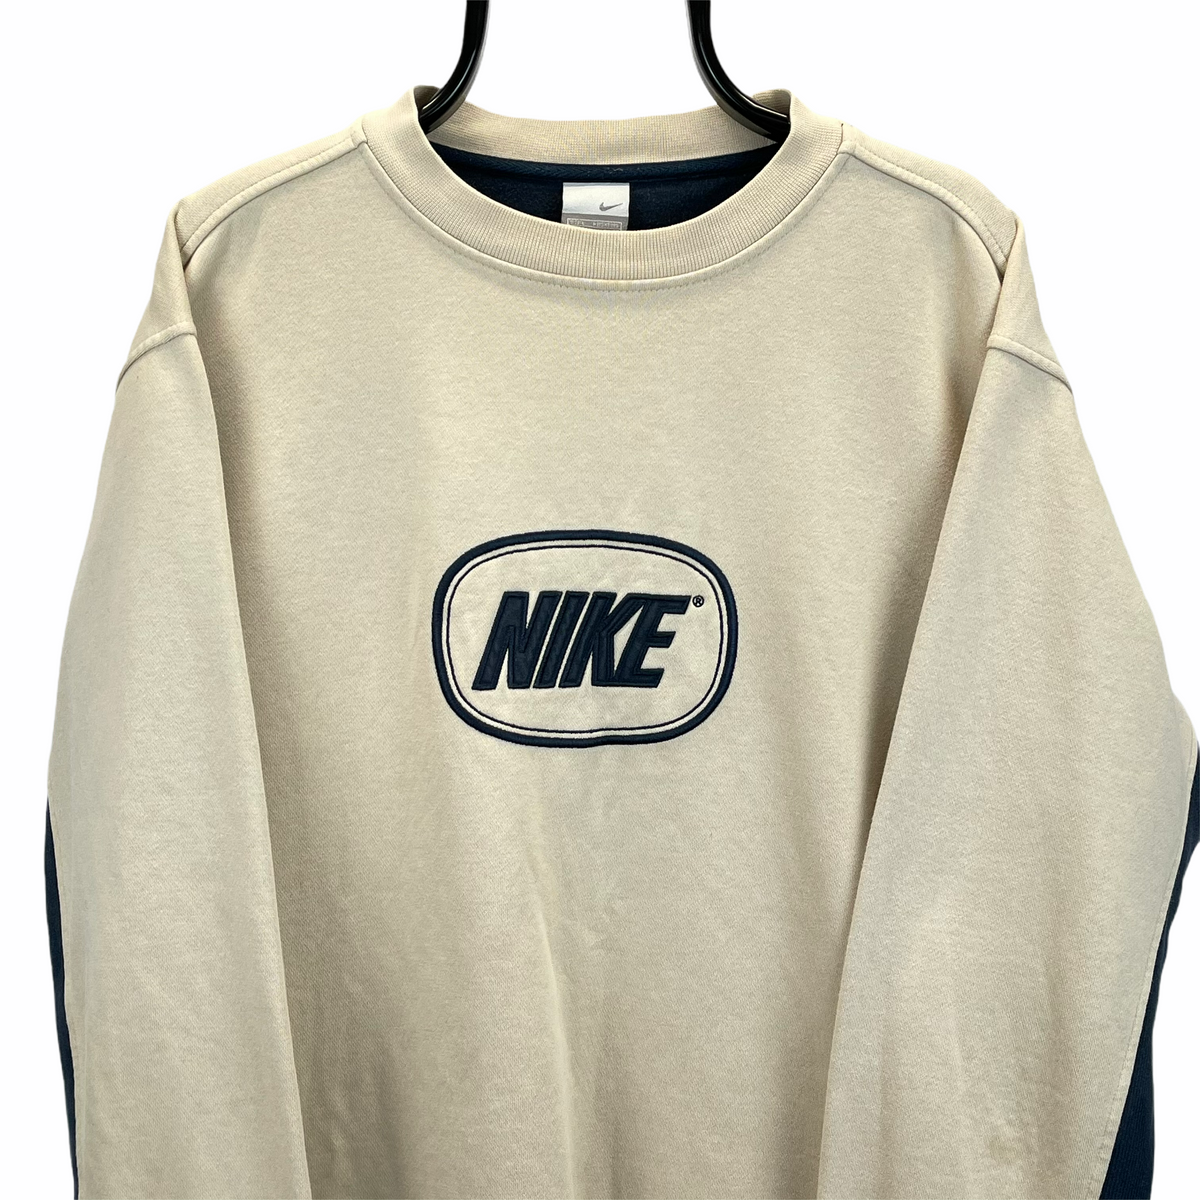 Vintage Nike Spellout Sweatshirt in Beige - Men's Large/Women's XL ...